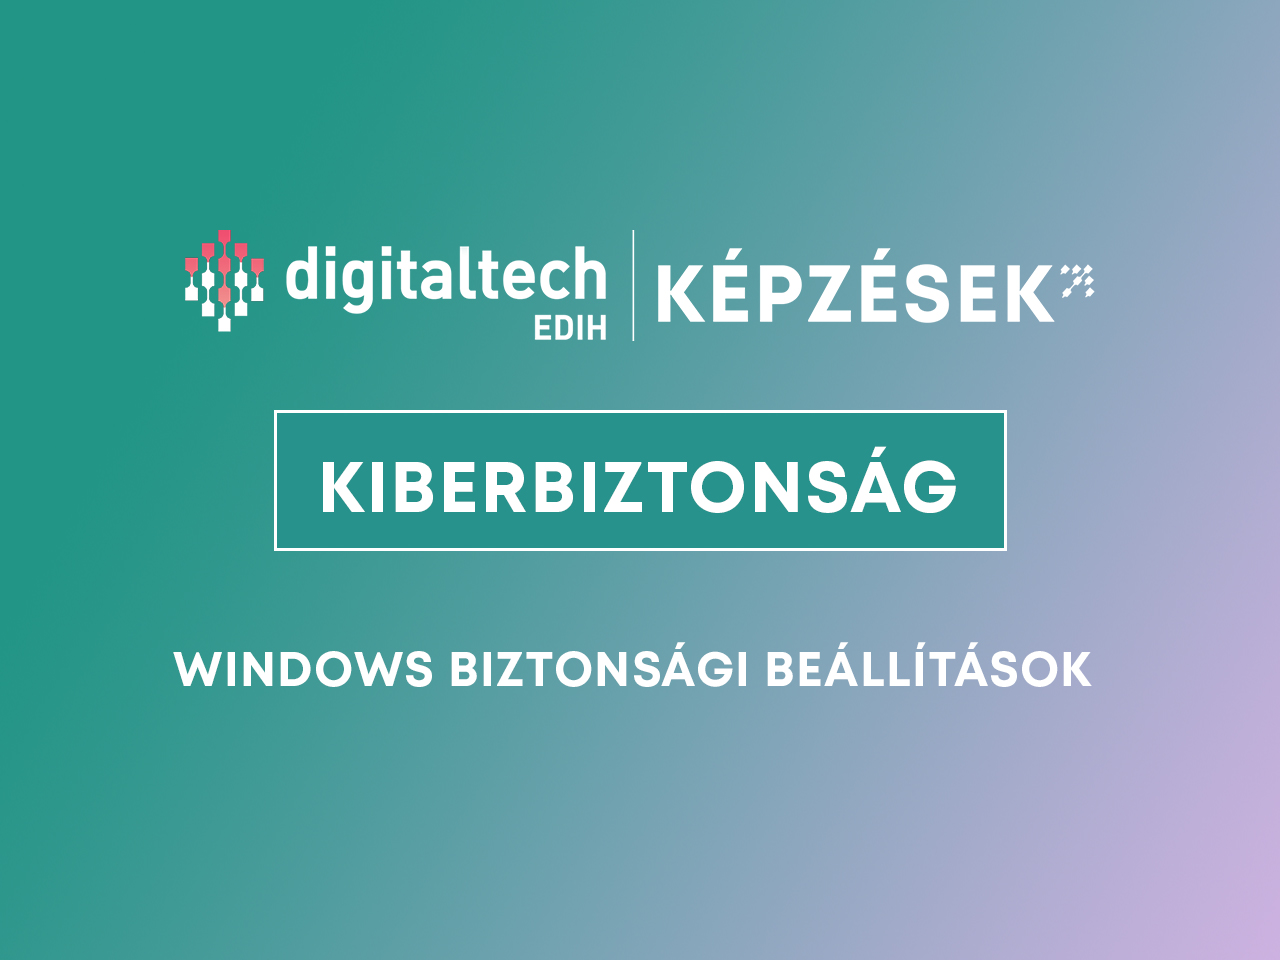 windows biztonsági beállítások DigitalTech EDIH kiberbiztonság képzés